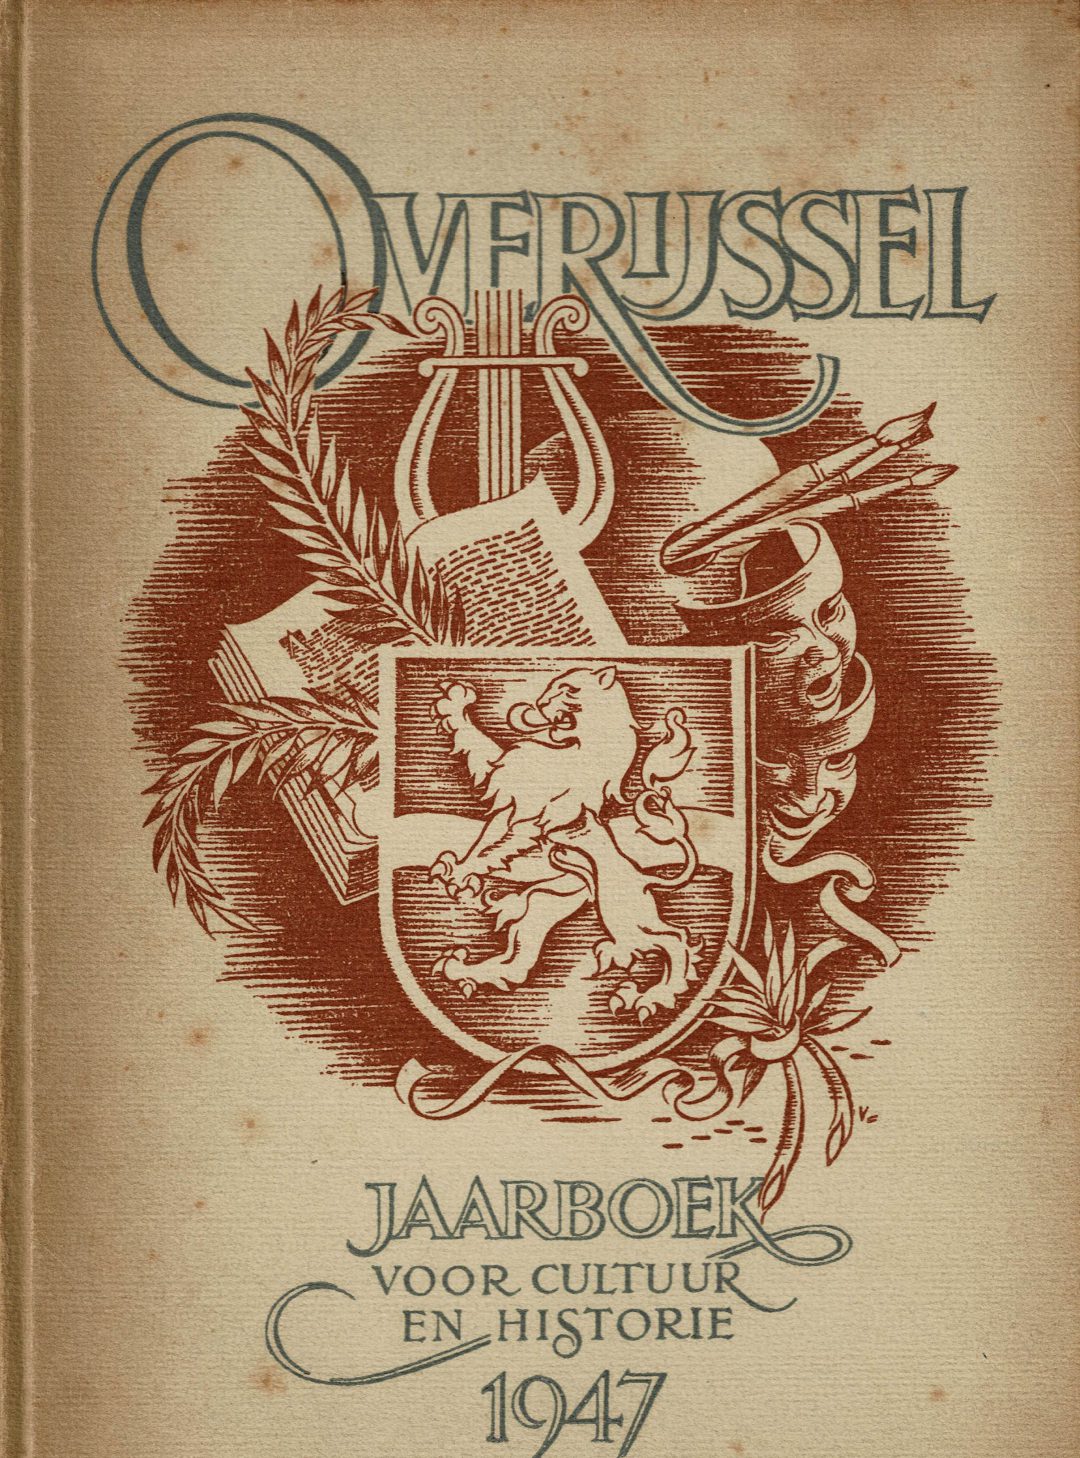 Johanna van Buren in Jaarboek Overijssel 1947